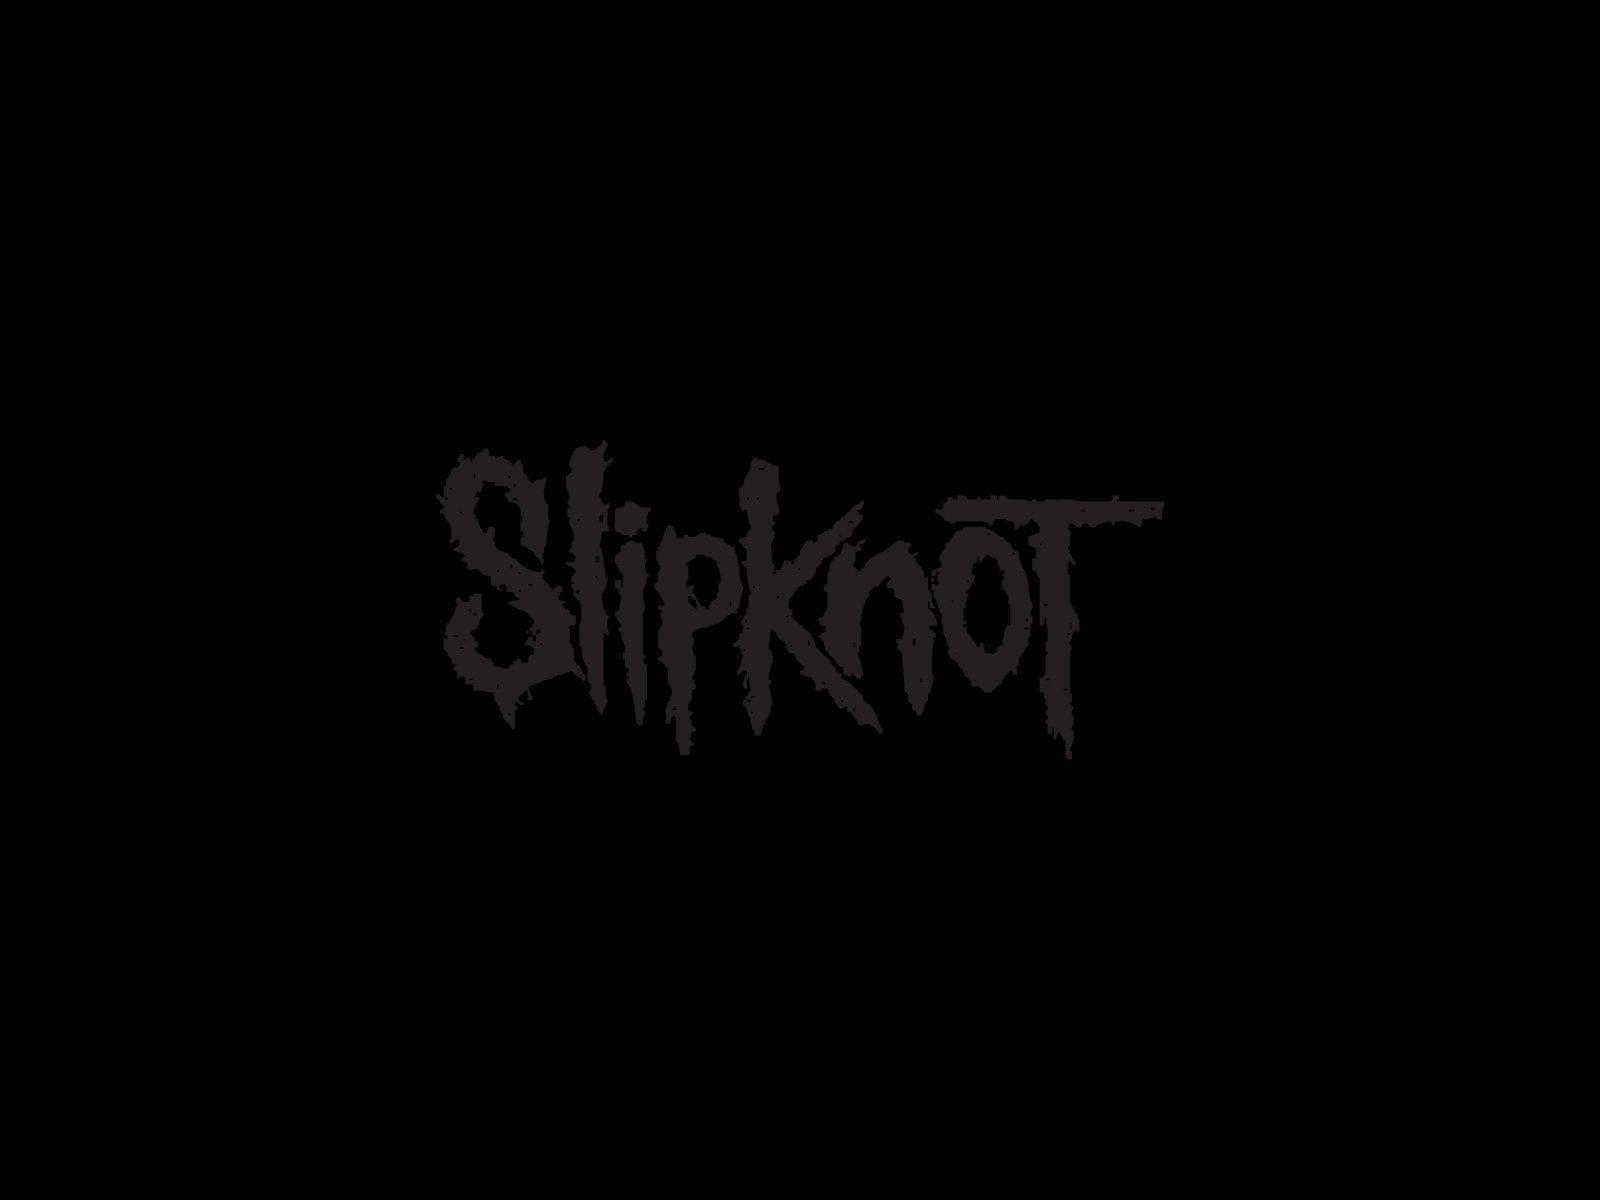 Steam WorkshopSlipknot Logo 1920x1080p